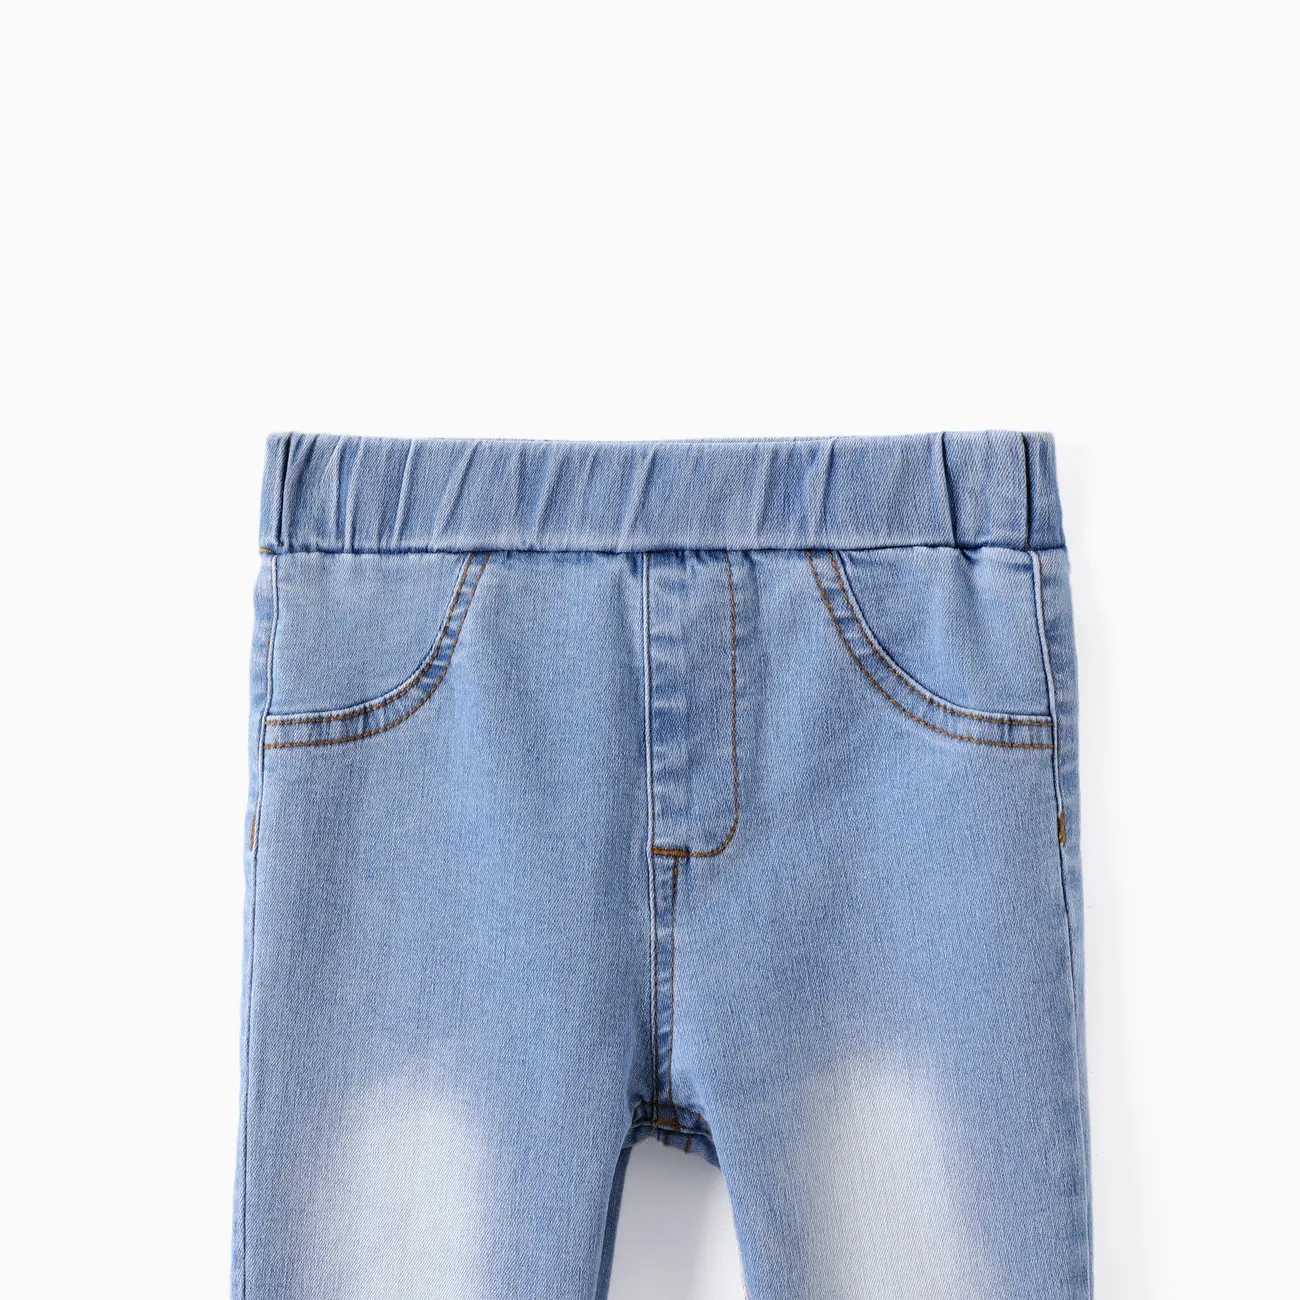 Bambino/Kid Girl 2 pz Leggings con stampa floreale e set di jeans in denim solido Multicolore big image 1